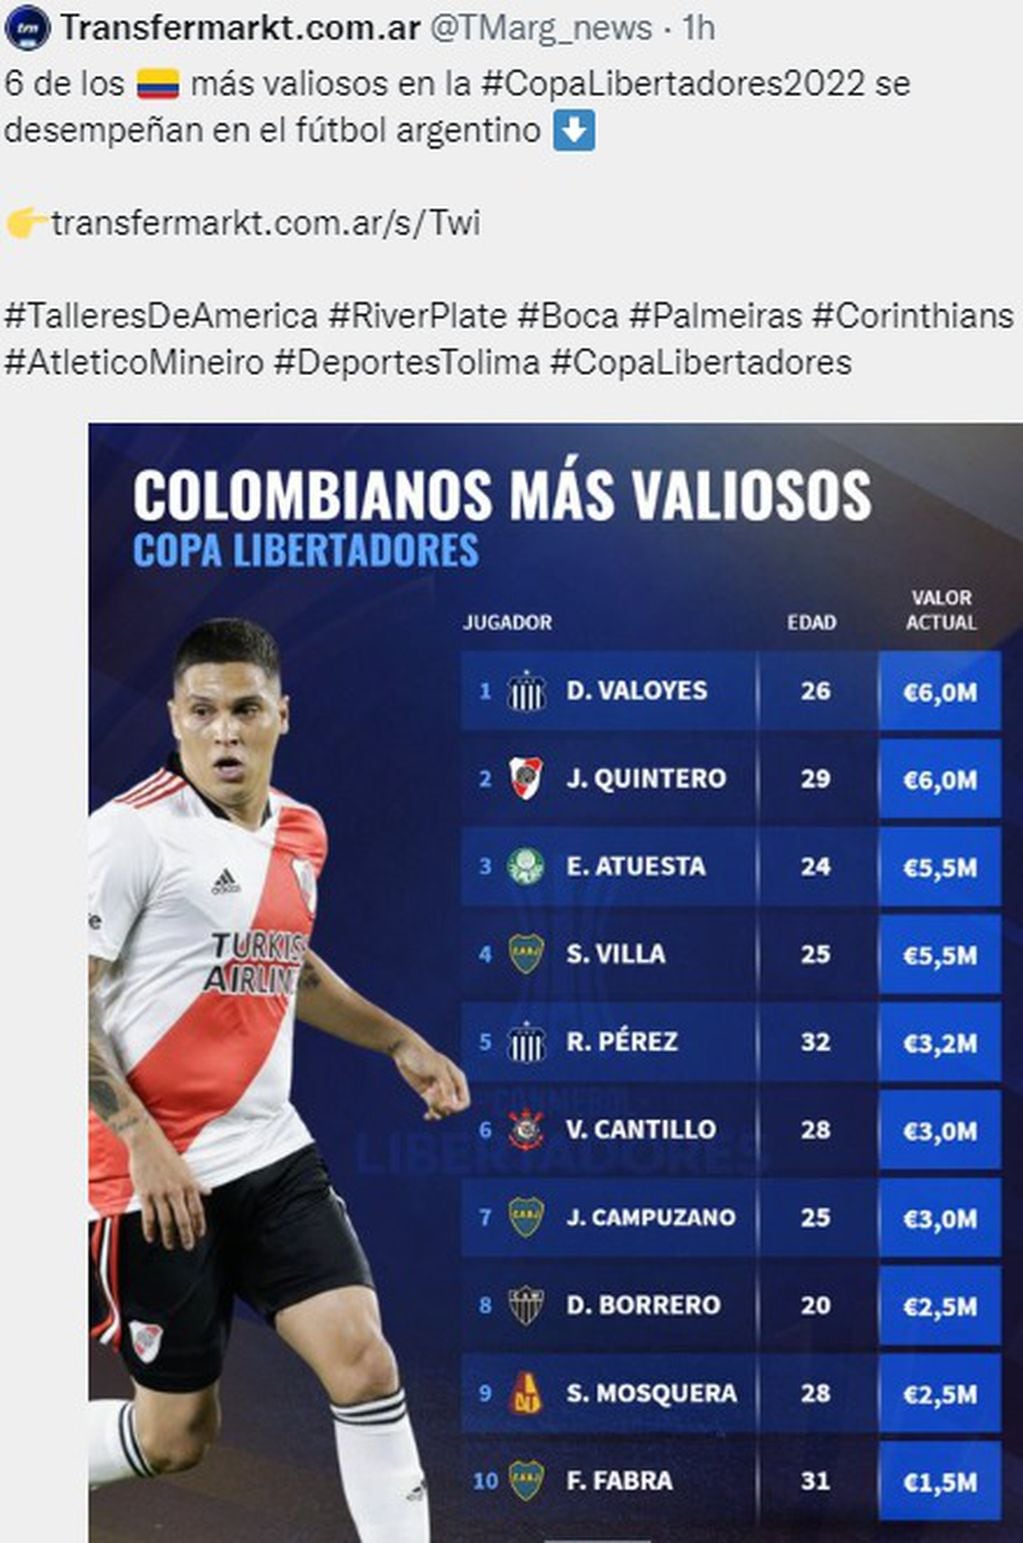 Los 10 colombianos más cotizados en Copa Libertadores con Diego Valoyes, delantero de Talleres, a la cabeza.